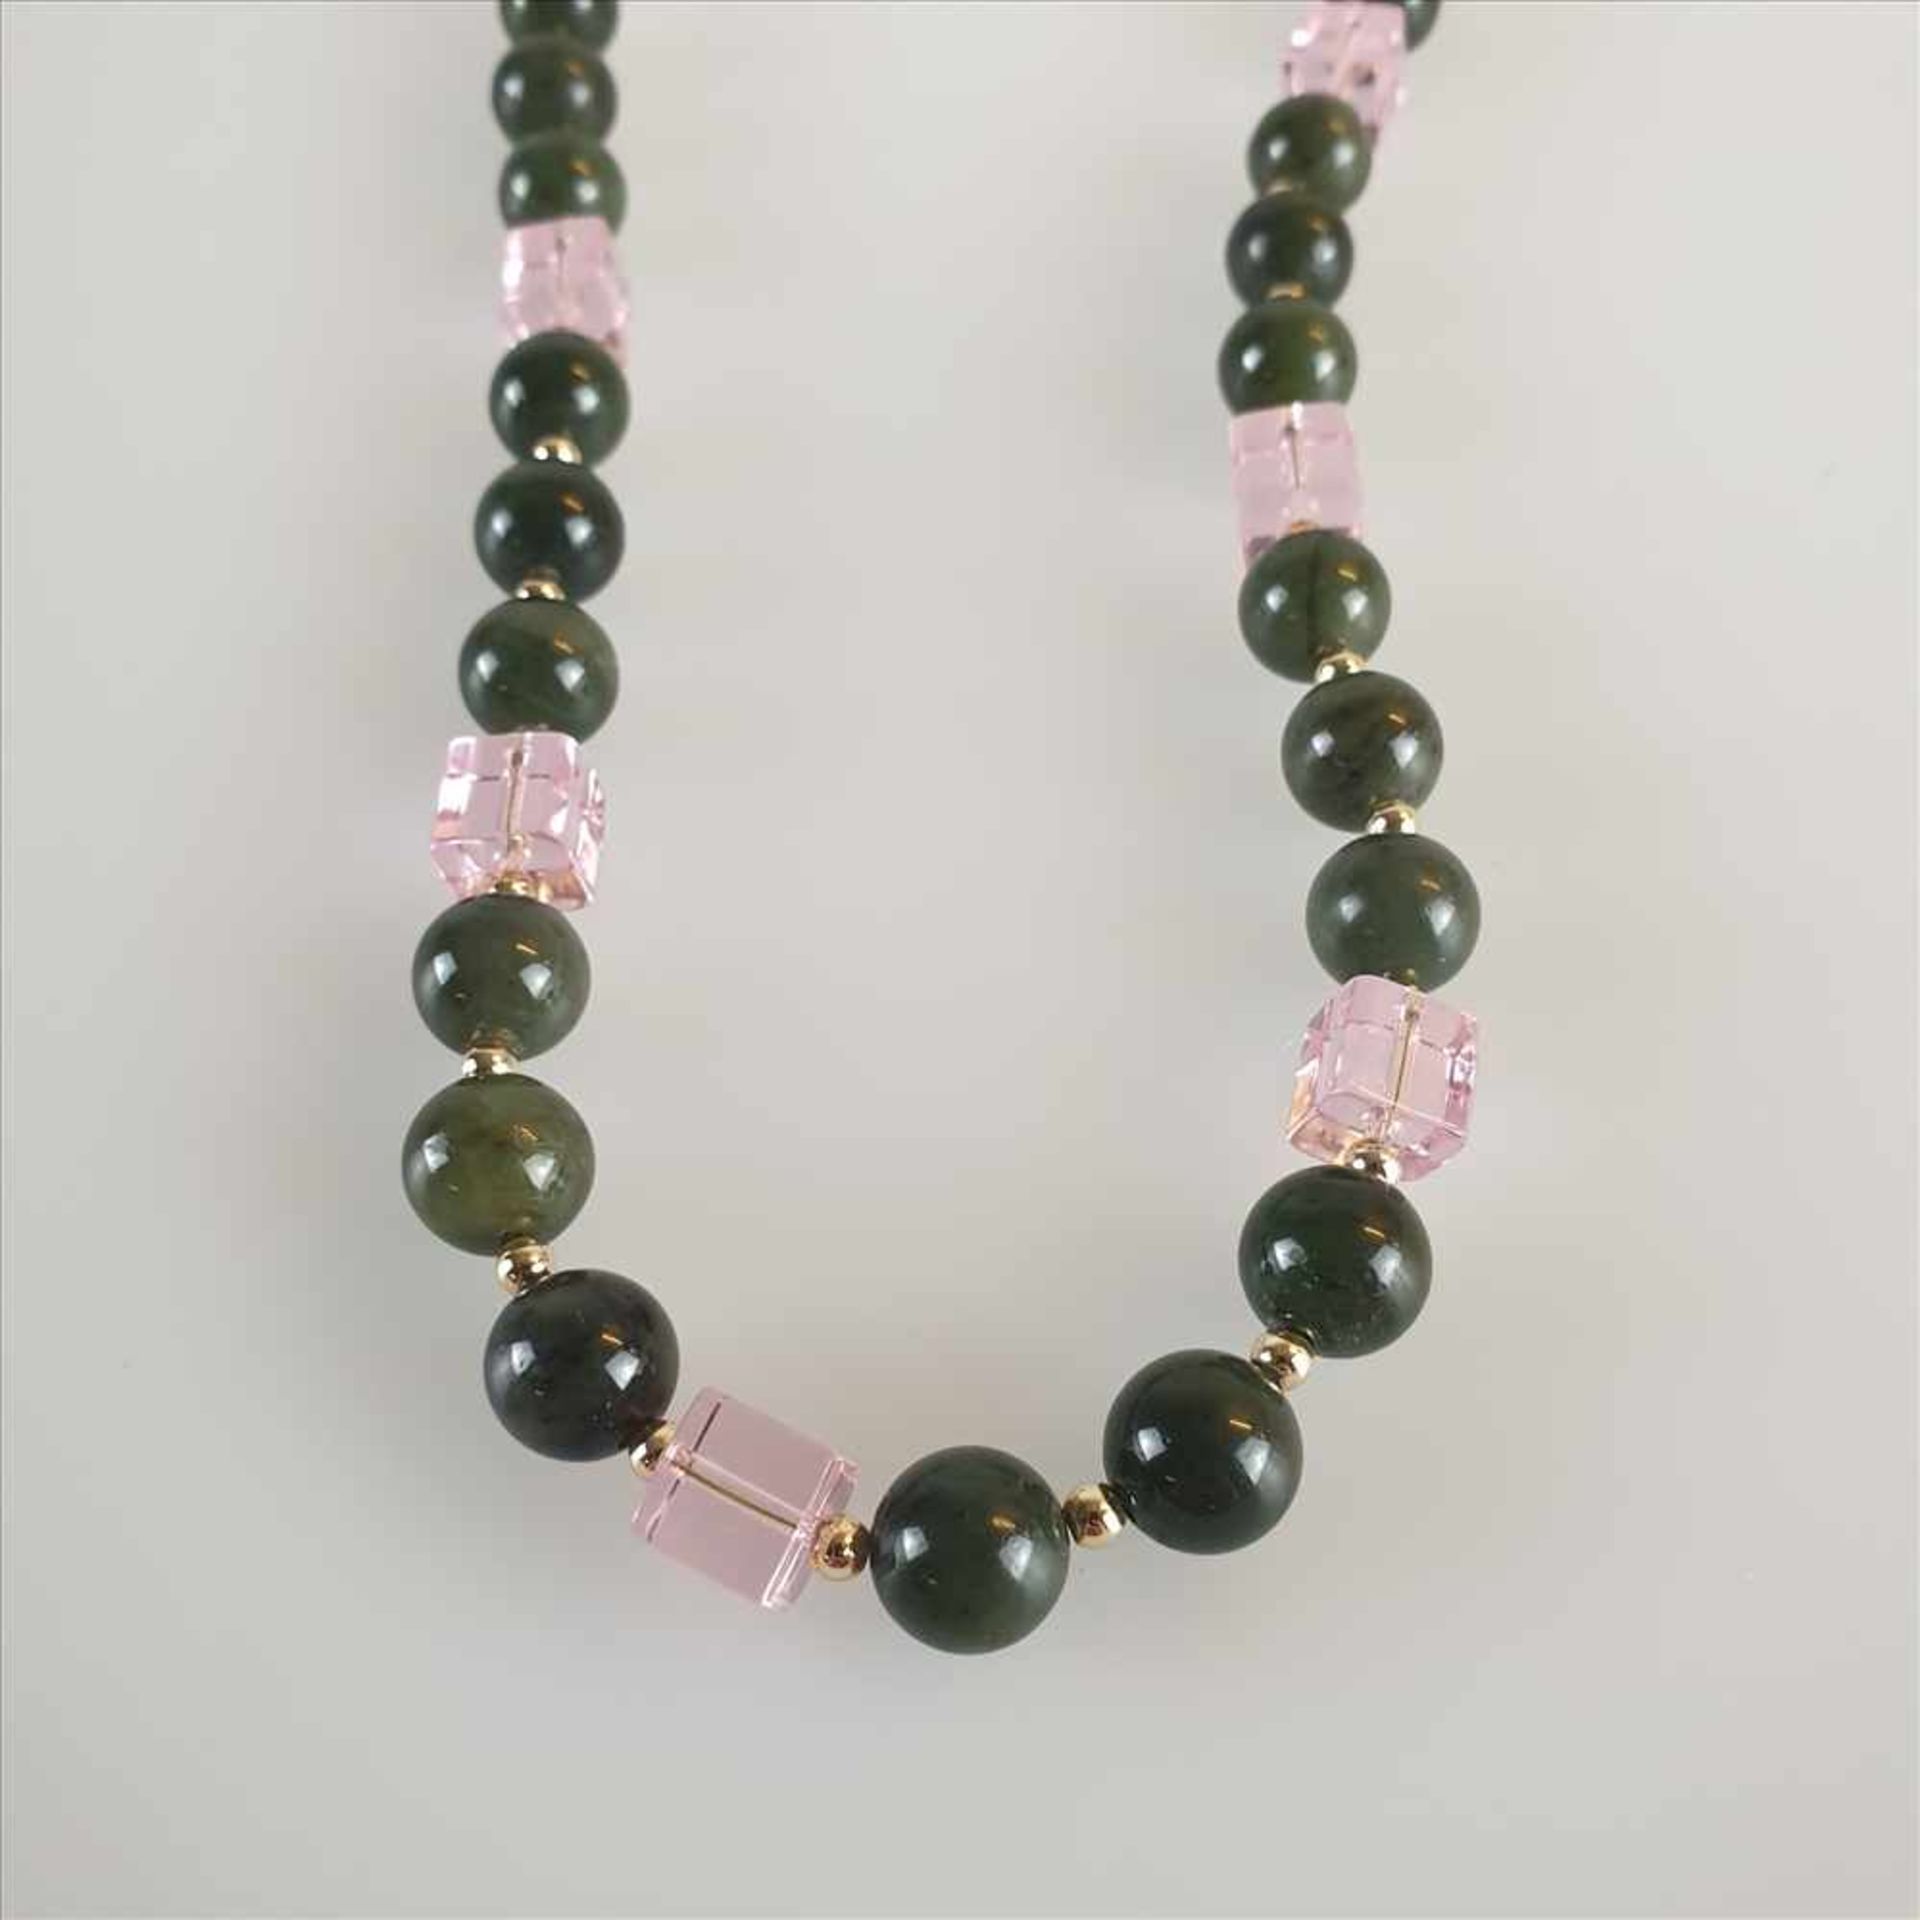 Halskette - aus 30 dunkelgrünen Königsjade-Kugeln, 9 roséfarbenen Swarovski-Glasquadern, goldfarbene - Bild 2 aus 3